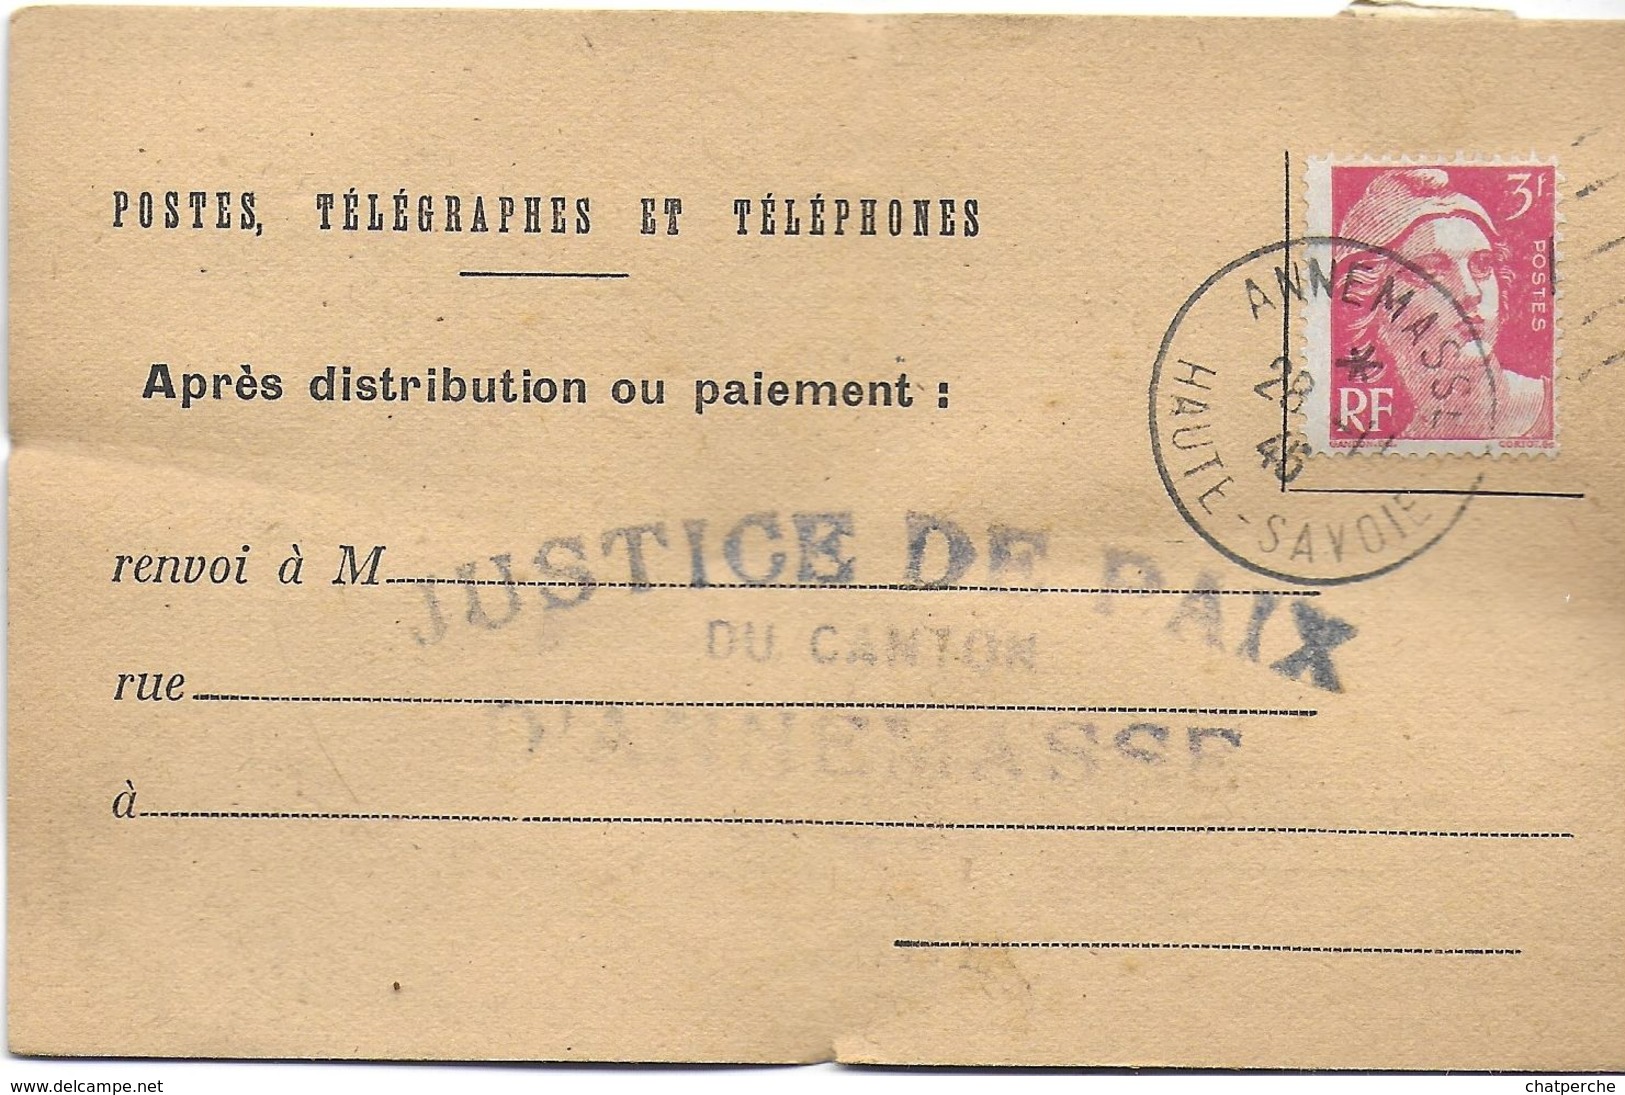 AVIS RÉCEPTION OU PAIEMENT POSTES TÉLÉGRAPHE & TÉLÉPHONES  1946  ANNEMASSE 74 HAUTE SAVOIE  JUSTICE DE PAIX CANTON LOT 3 - Historische Dokumente